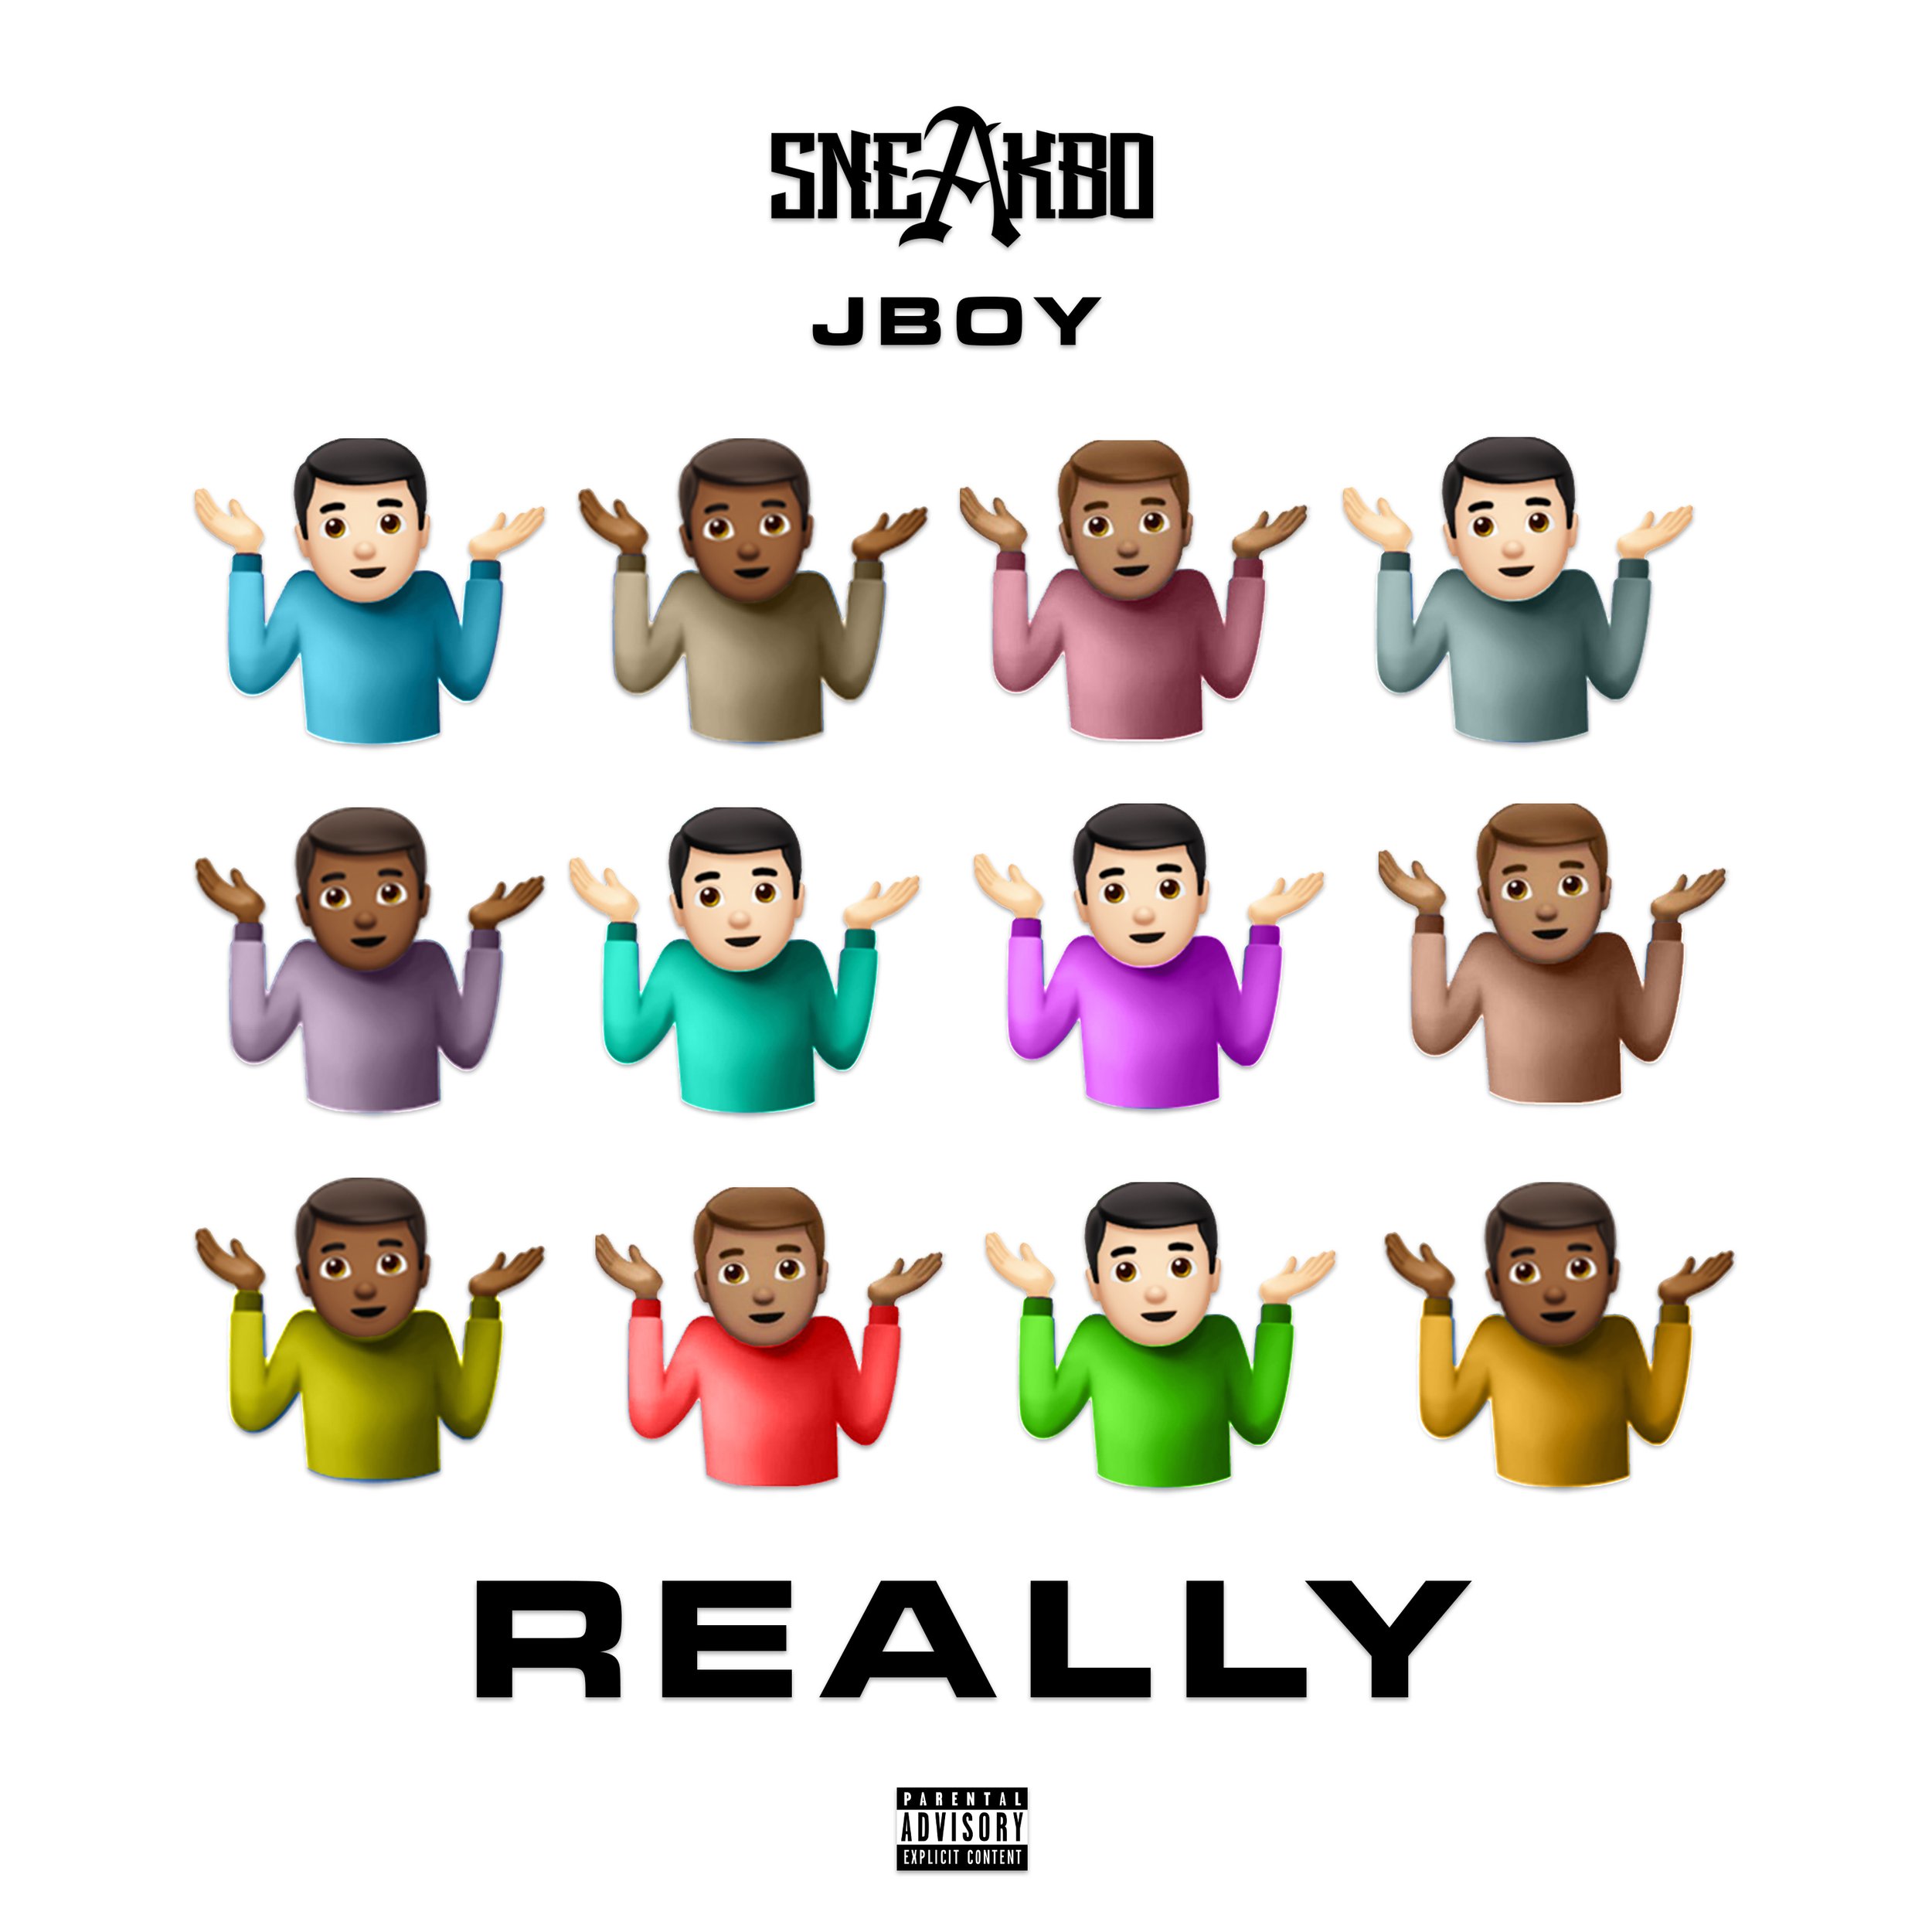 SNEAKBO ft. JBOY - REALLY Cover Art.jpg